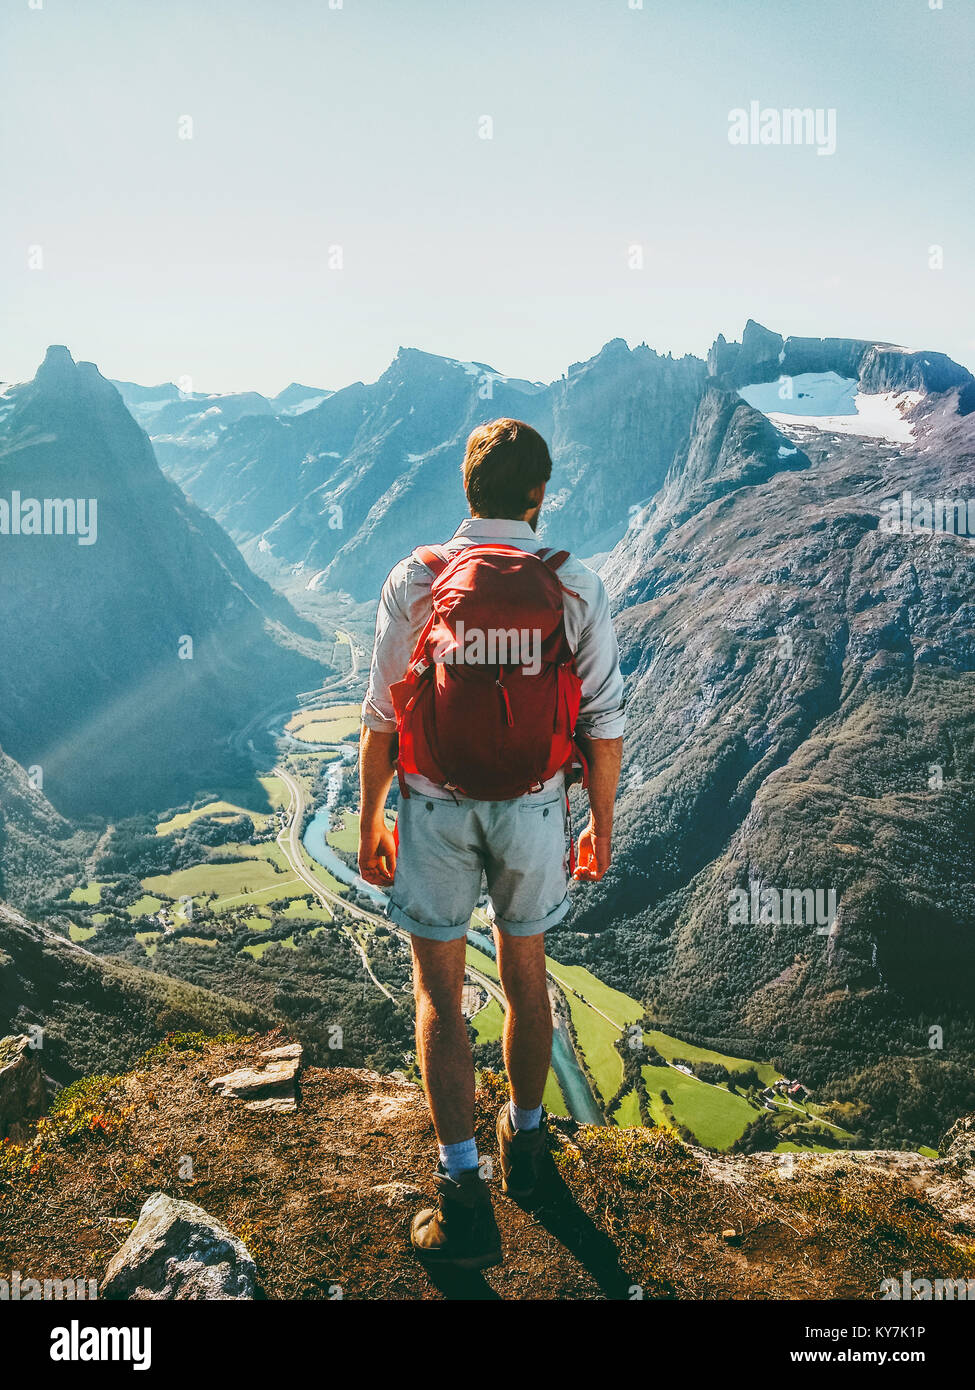 L'homme en Norvège Voyage montagnes healthy lifestyle concept active week-end Vacances d'apprécier vue aérienne du paysage Banque D'Images